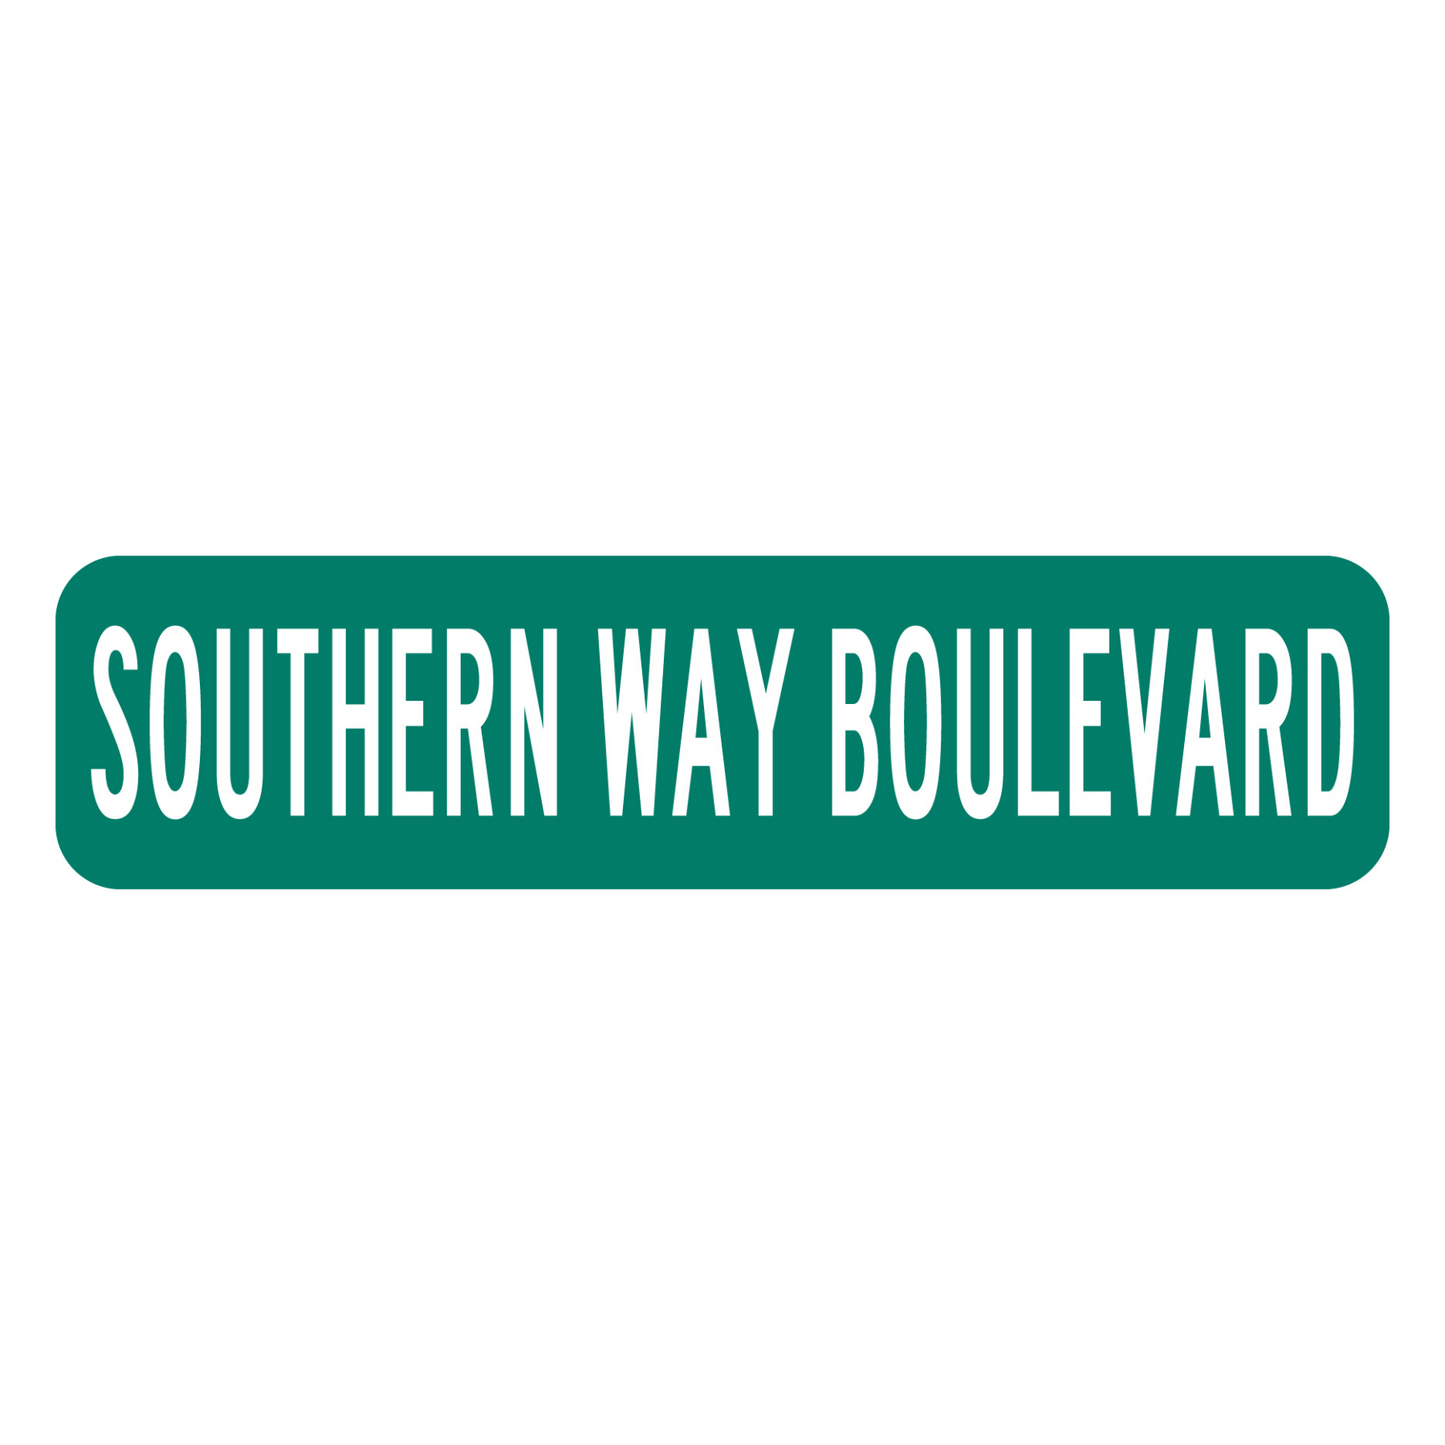 6" x 24" Southern Way Boulevard Aluminum Sign